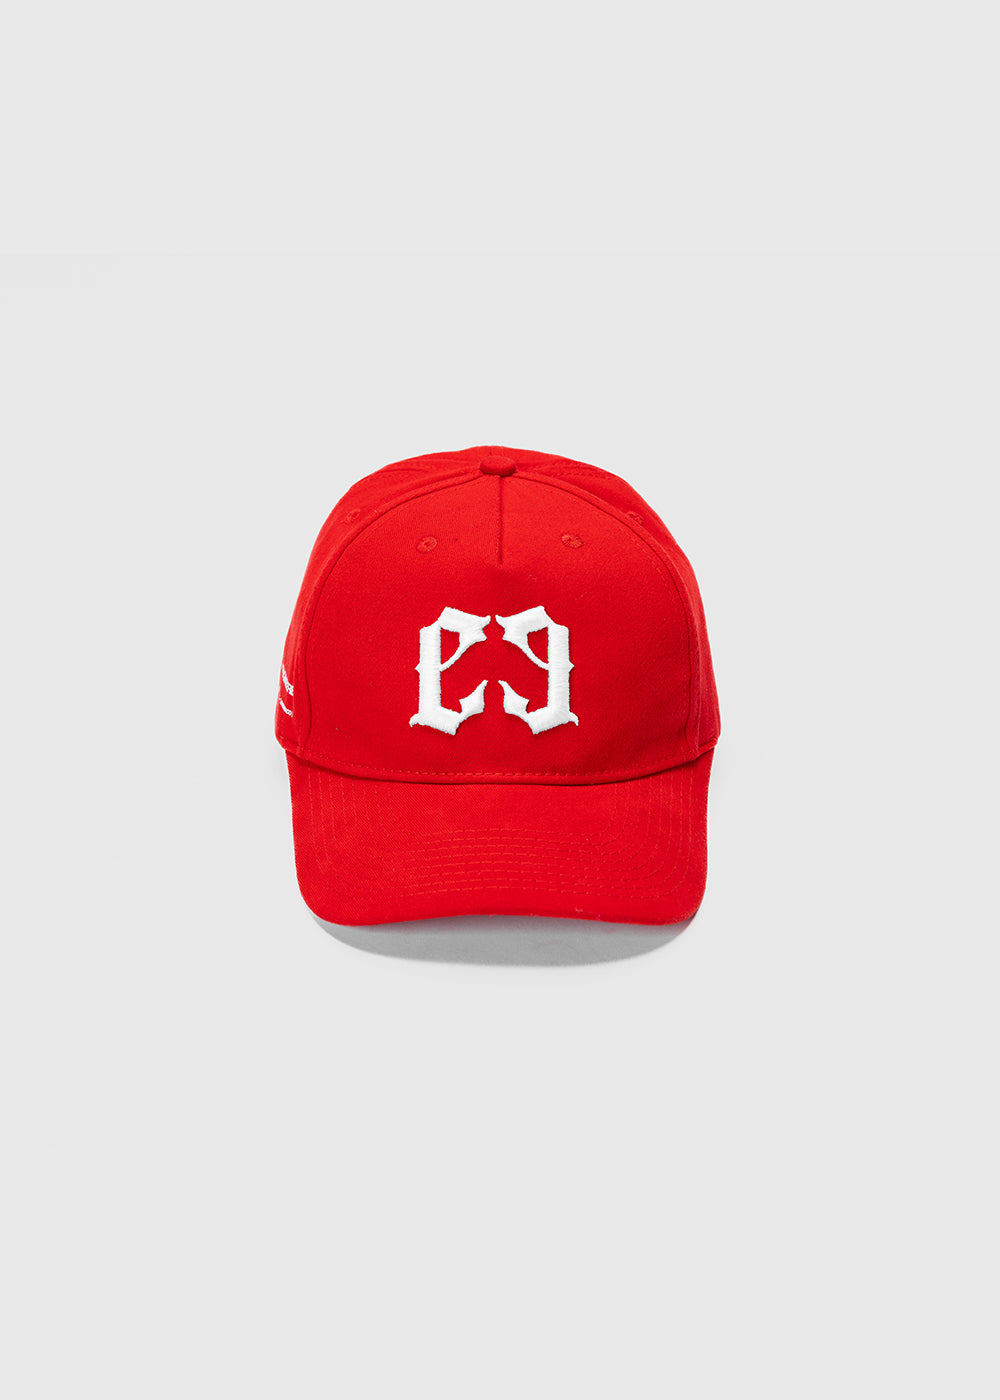 SIGNATURE CAP - FLAME RED